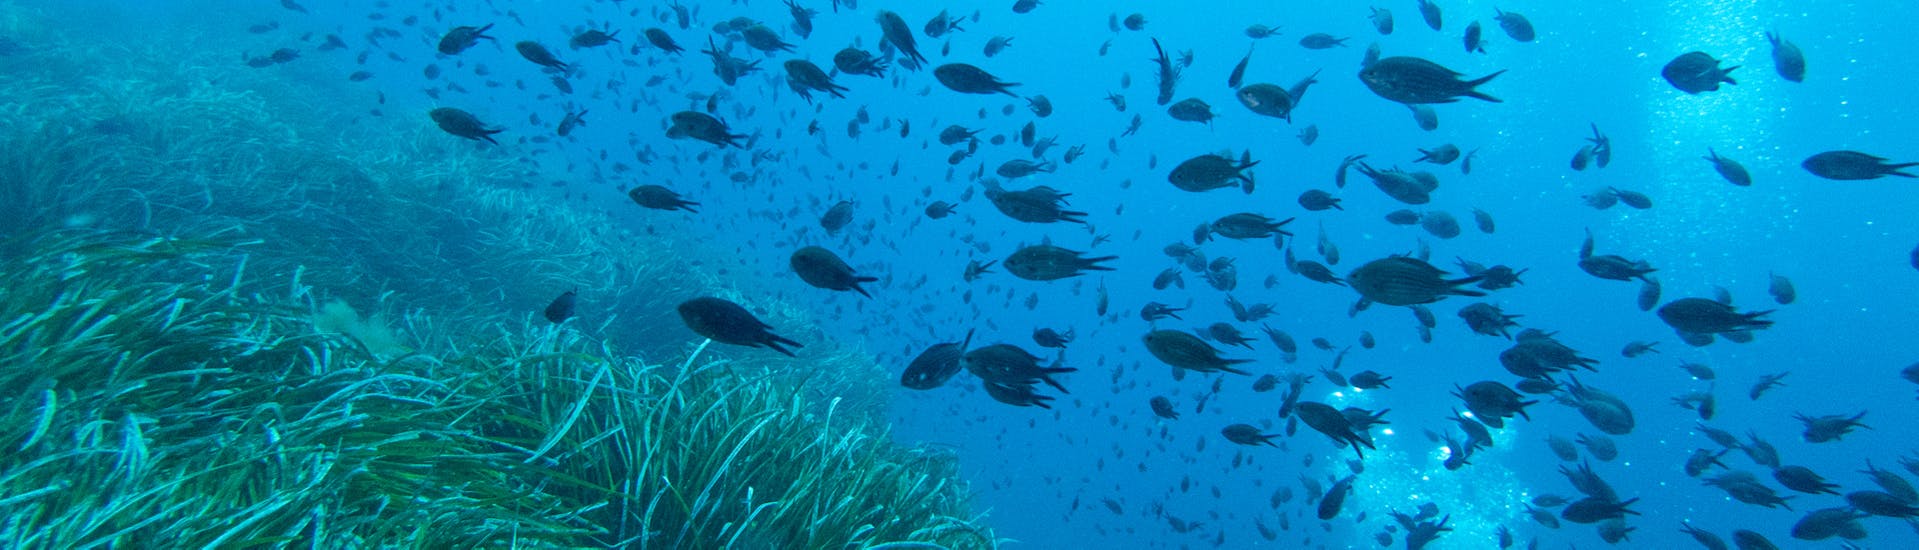 Alcuni pesci che potrete osservare durante il Corso PADI Discover Scuba Diving ad Addaia a Menorca per principianti con Blue Dive Menorca.